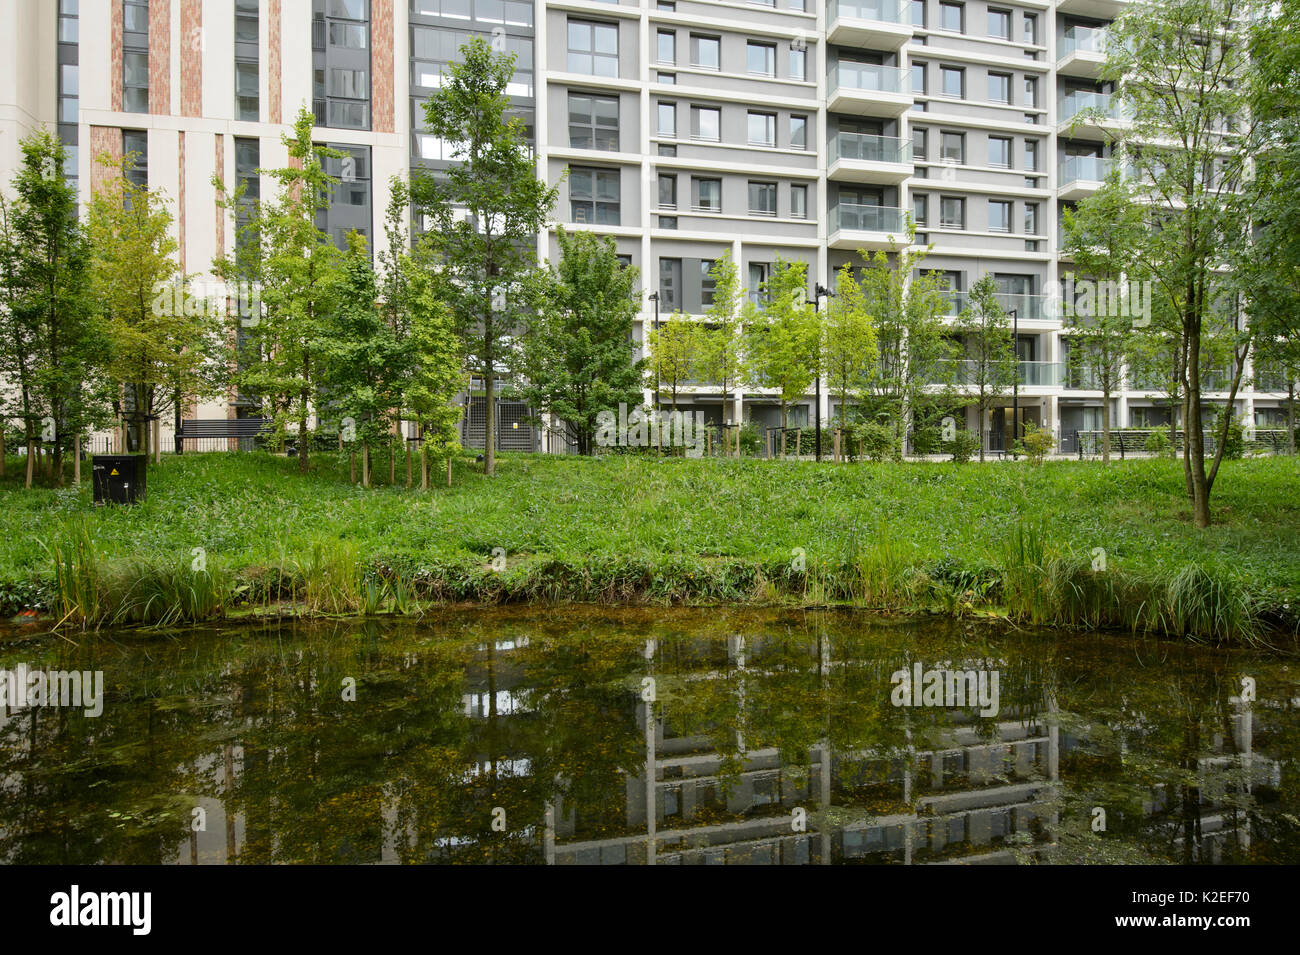 Enriquecimiento ambiental diseñada en urbanización, con estanque de vida silvestre y espacios verdes, East Village en el sitio de alojamiento de la Villa Olímpica, Stratford, London, UK 2014 Foto de stock